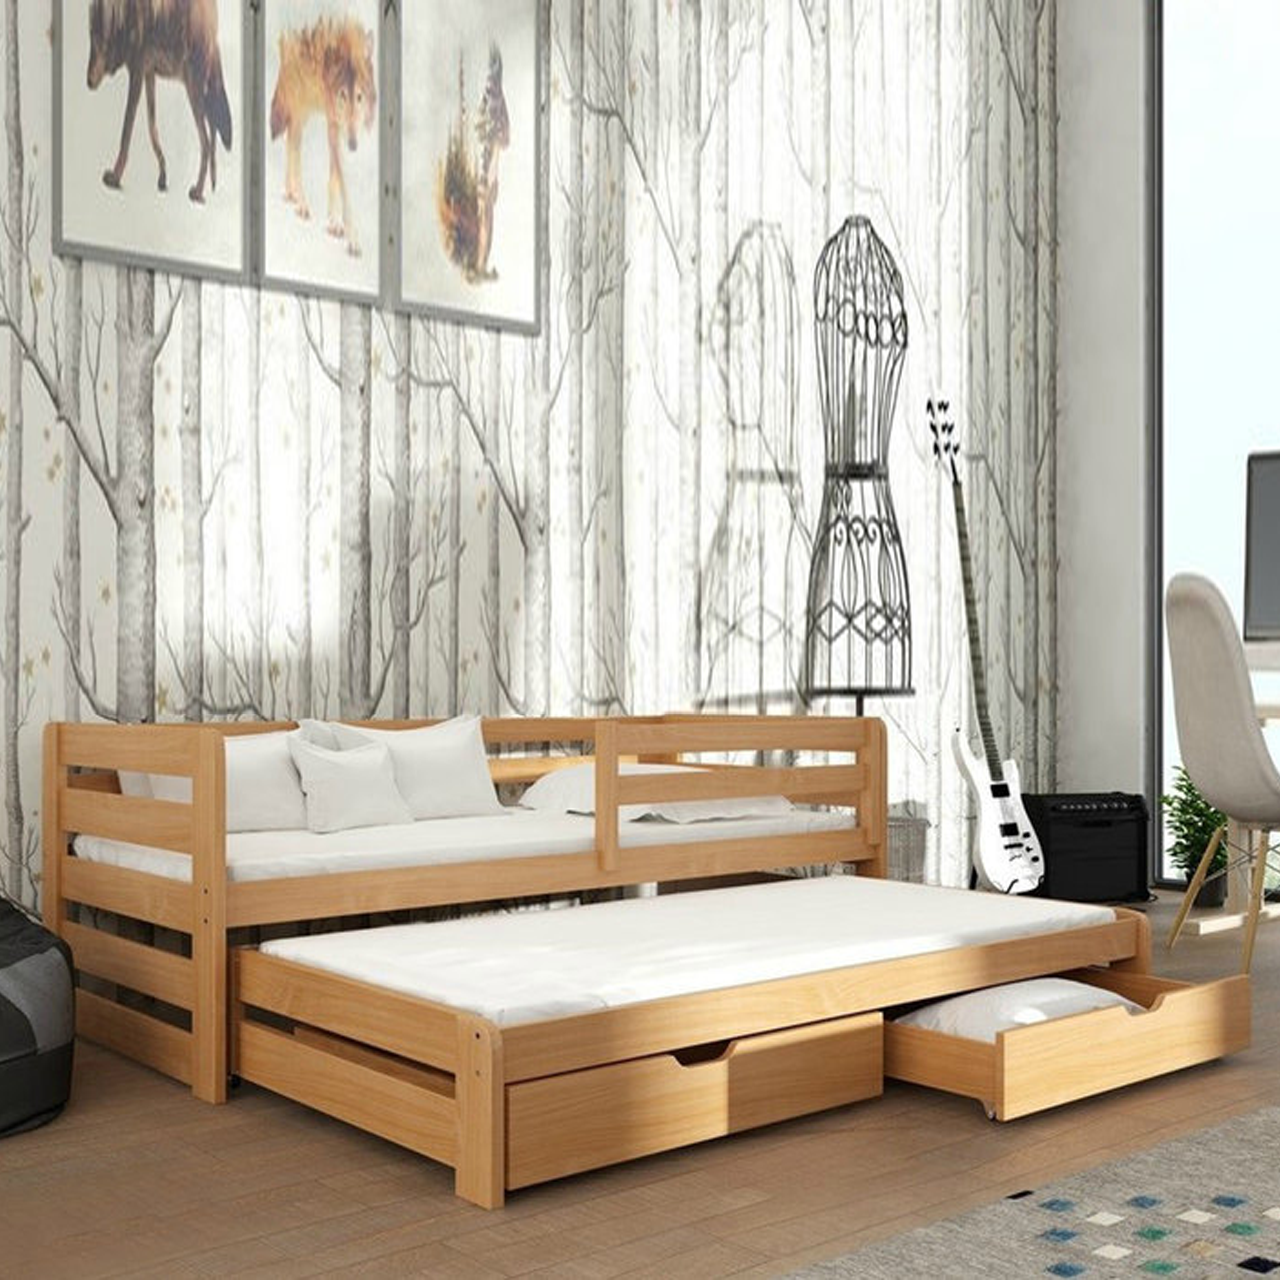 Ліжко дитяче дерев'яне Летті з додатковим спальним місцем (масив бука)